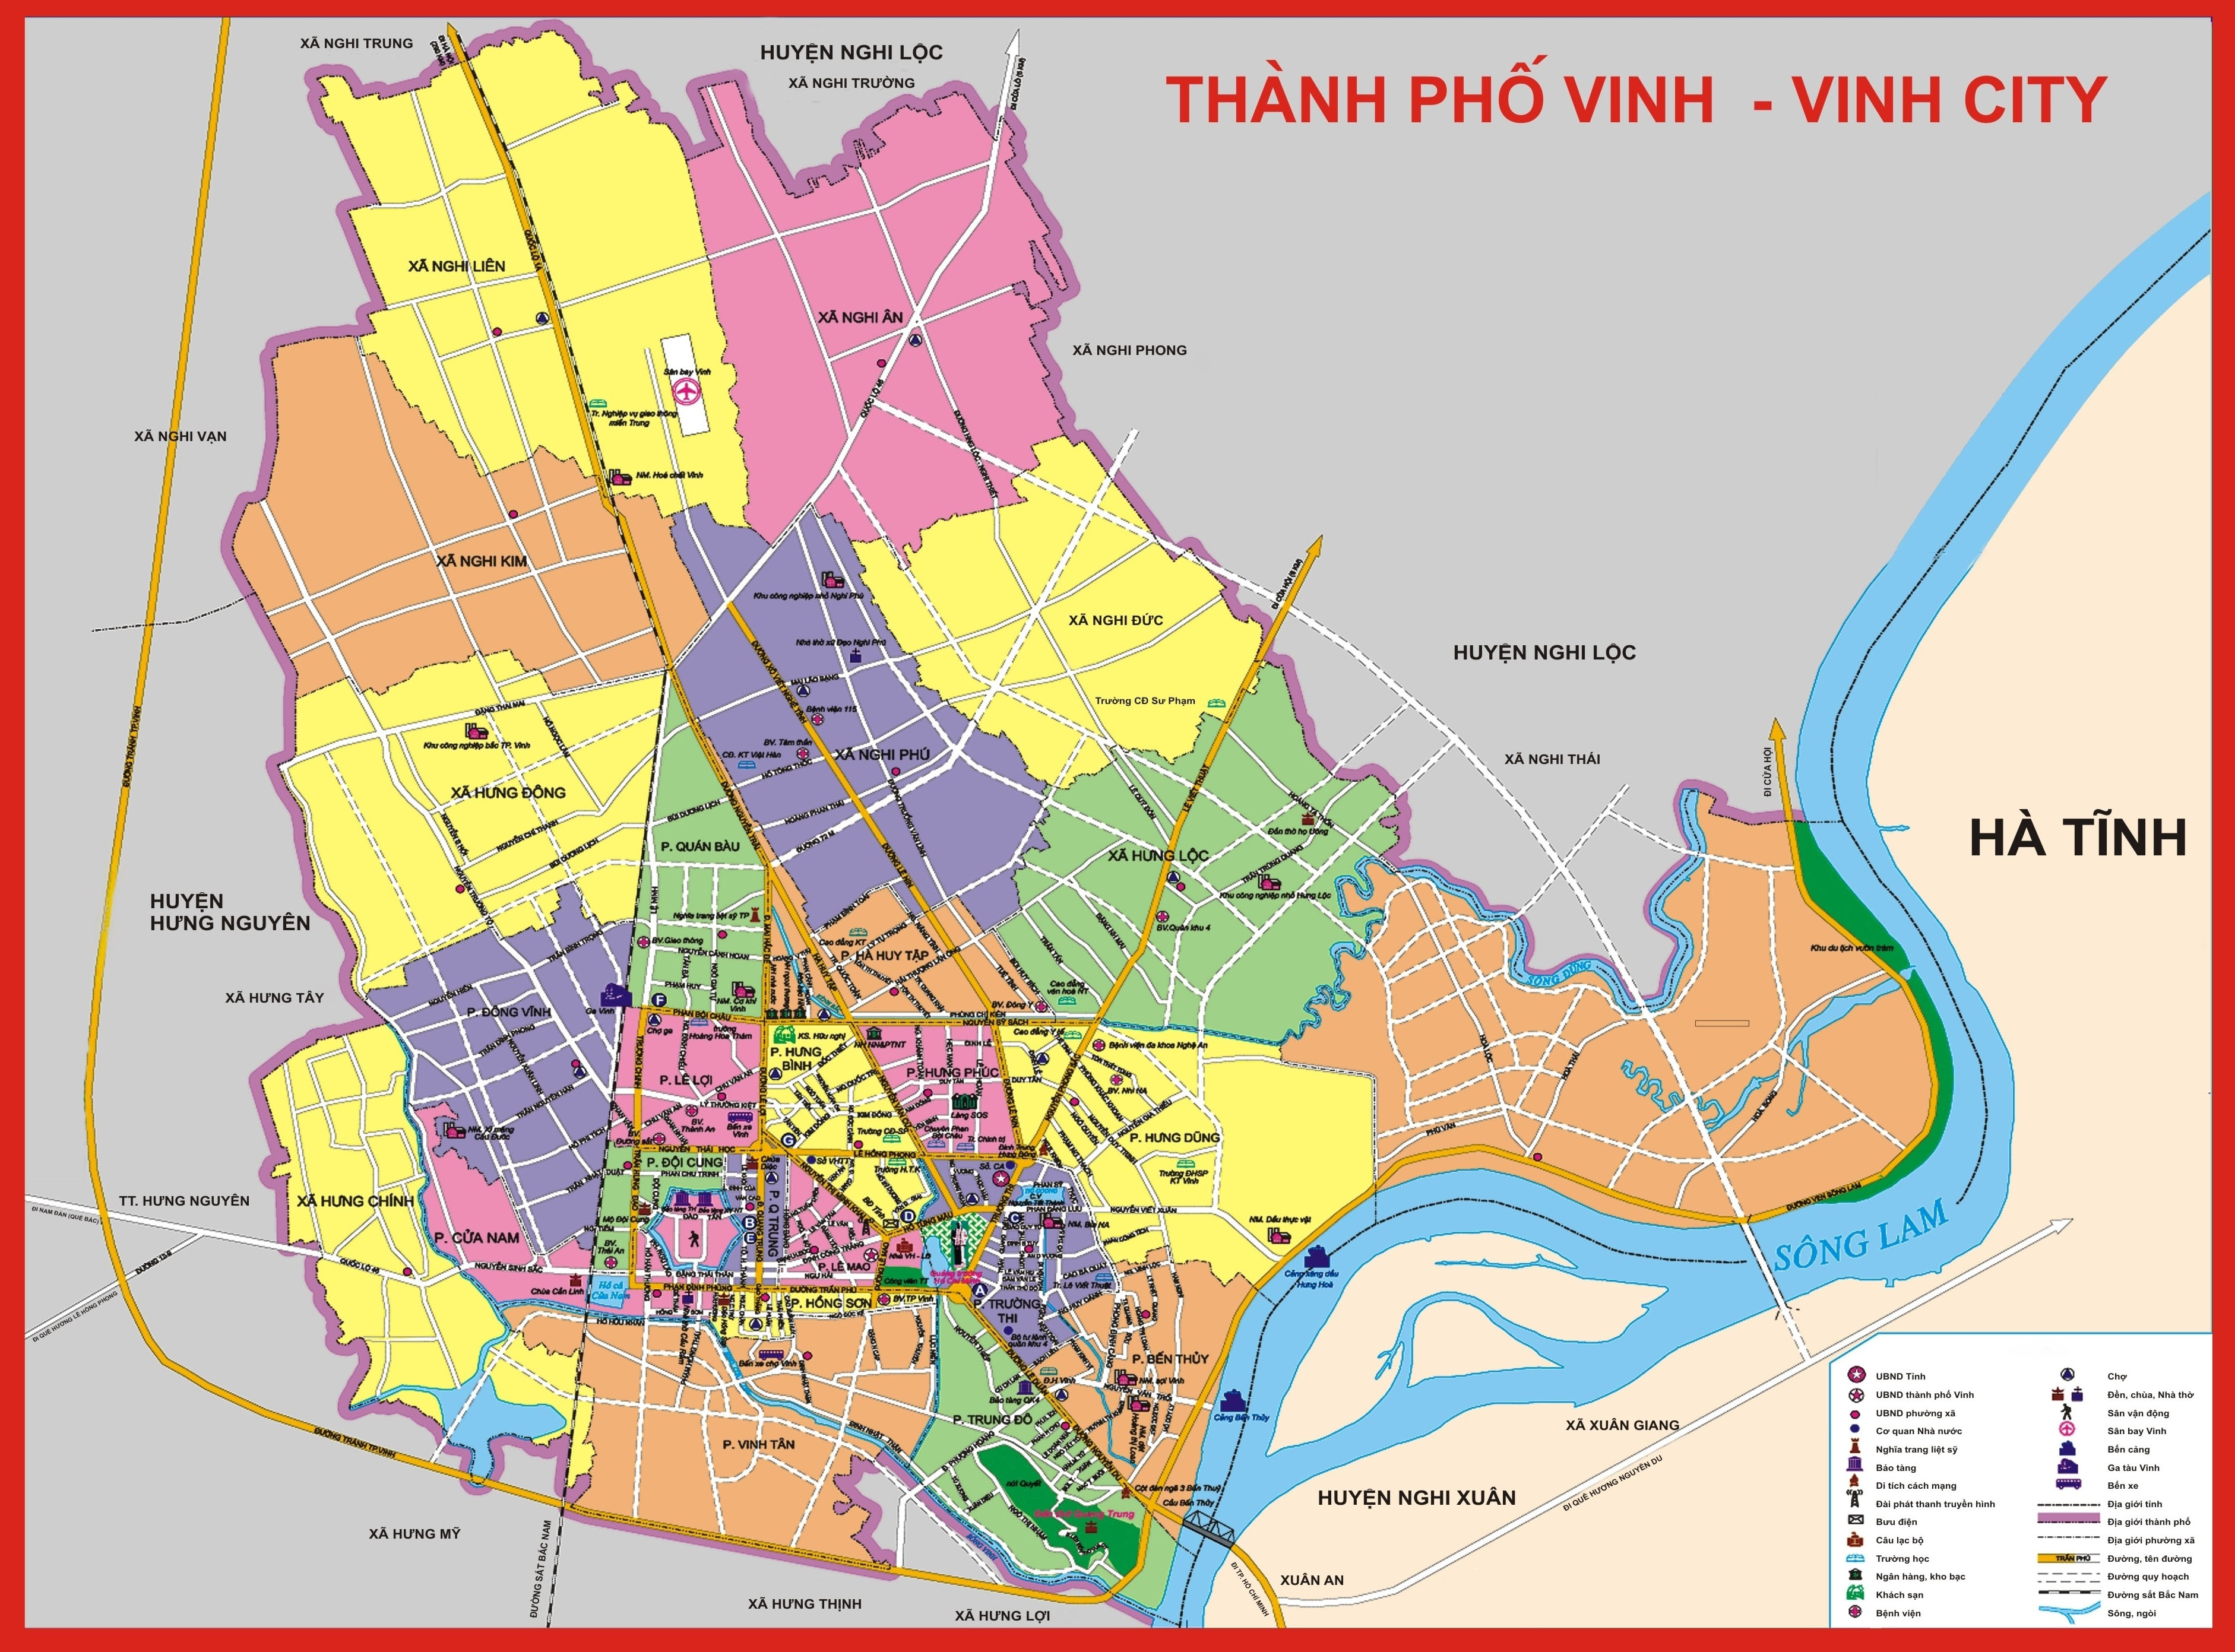 Tìm hiểu về các địa danh, hệ thống giao thông, điểm du lịch và những khu đô thị được quy hoạch rõ ràng. Sắp tới, tỉnh Nghệ An sẽ tiếp tục phát triển mạnh mẽ hơn nữa.